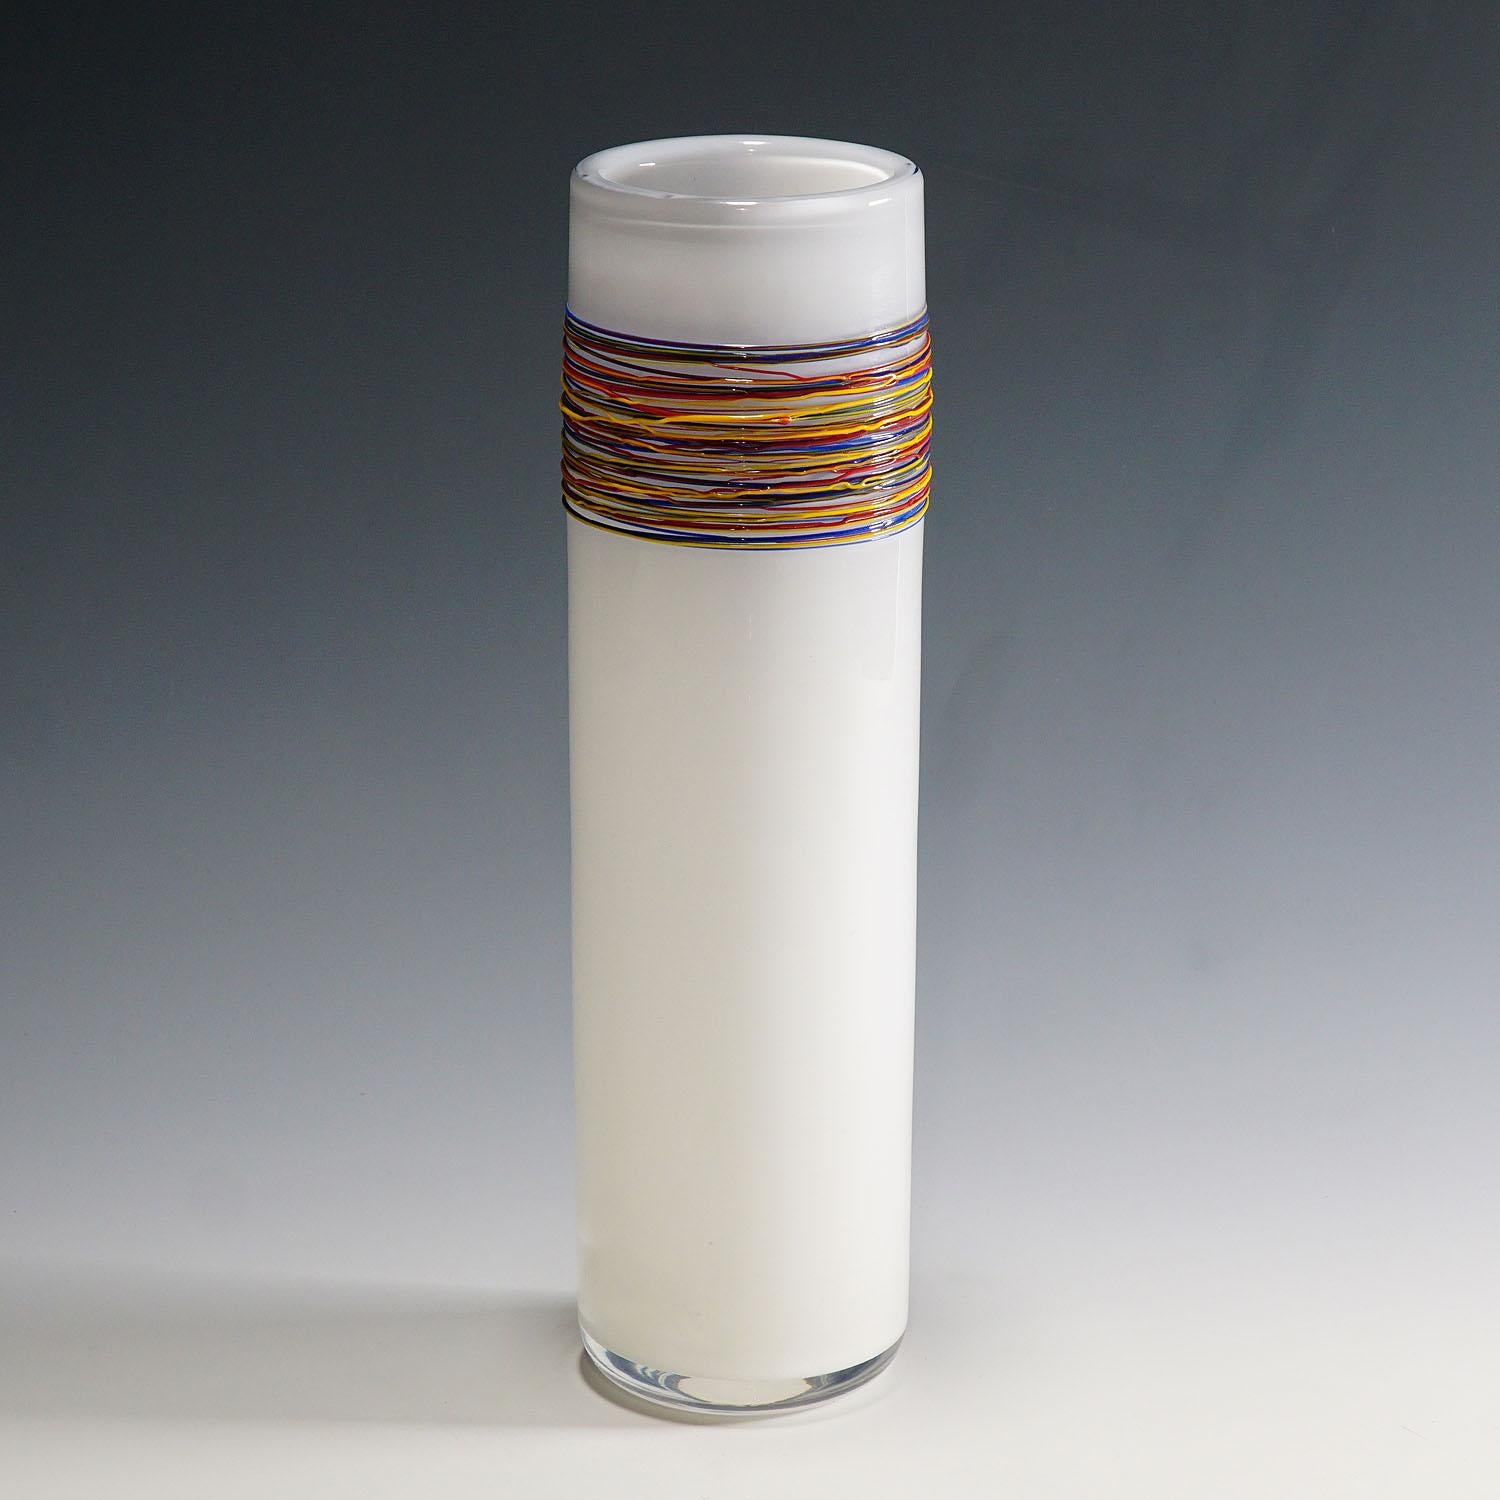 Eine Vase aus Kunstglas, entworfen und hergestellt in der Glasfachschule Zwiesel in Bayern. Opakweißes Glas mit Klarglasüberfang, verziert mit heiß verschmolzenen Glasstufen aus rotem, gelbem und blauem Opakglas. Deutschland ca. 1980er Jahre. Auf